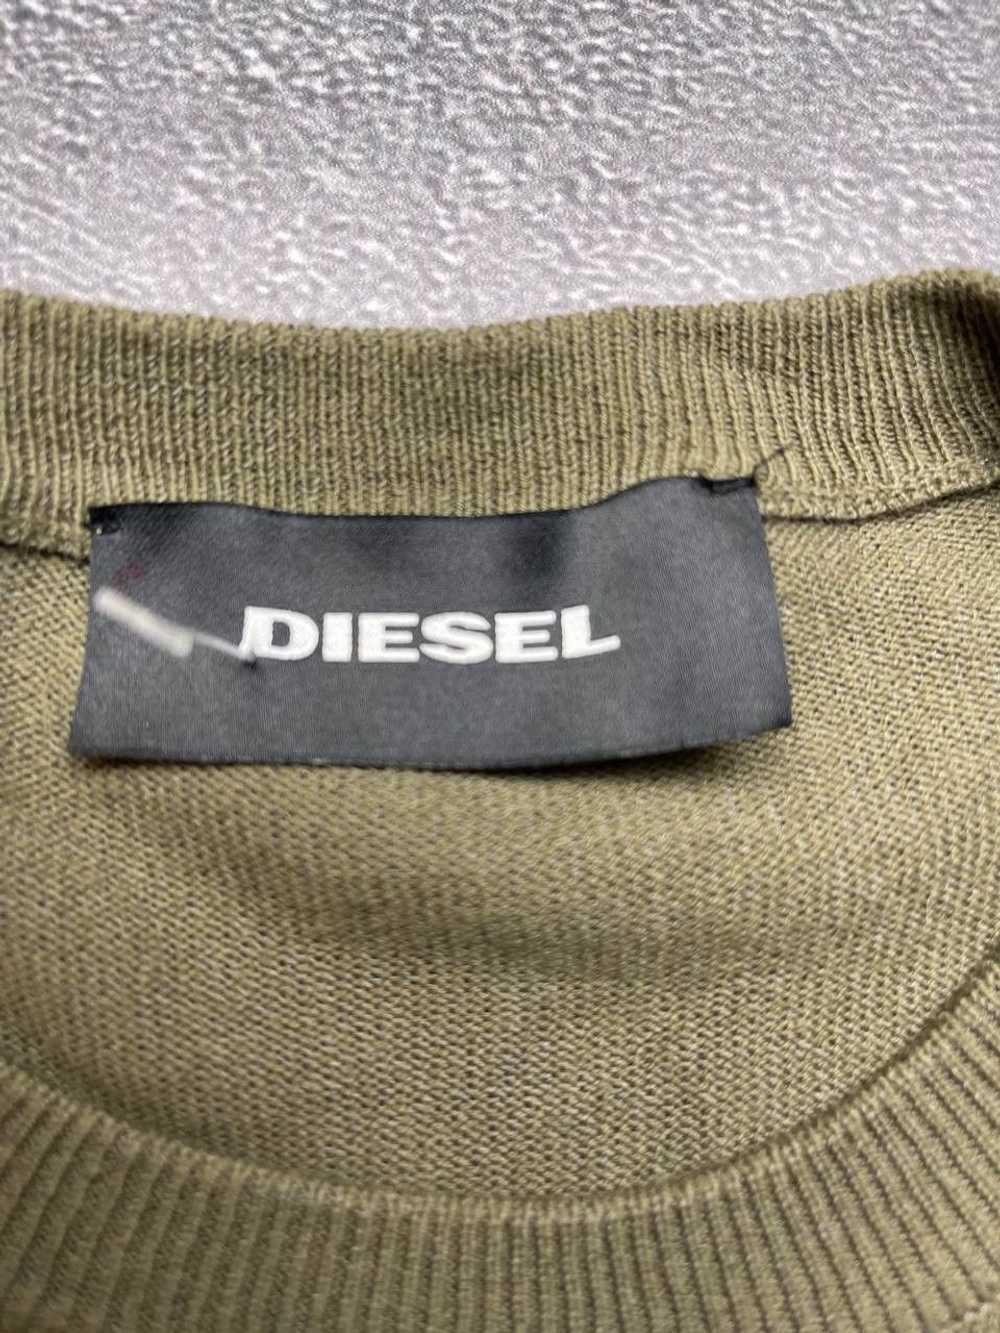 Diesel × Diesel Black Gold × Streetwear Sweatshir… - image 3